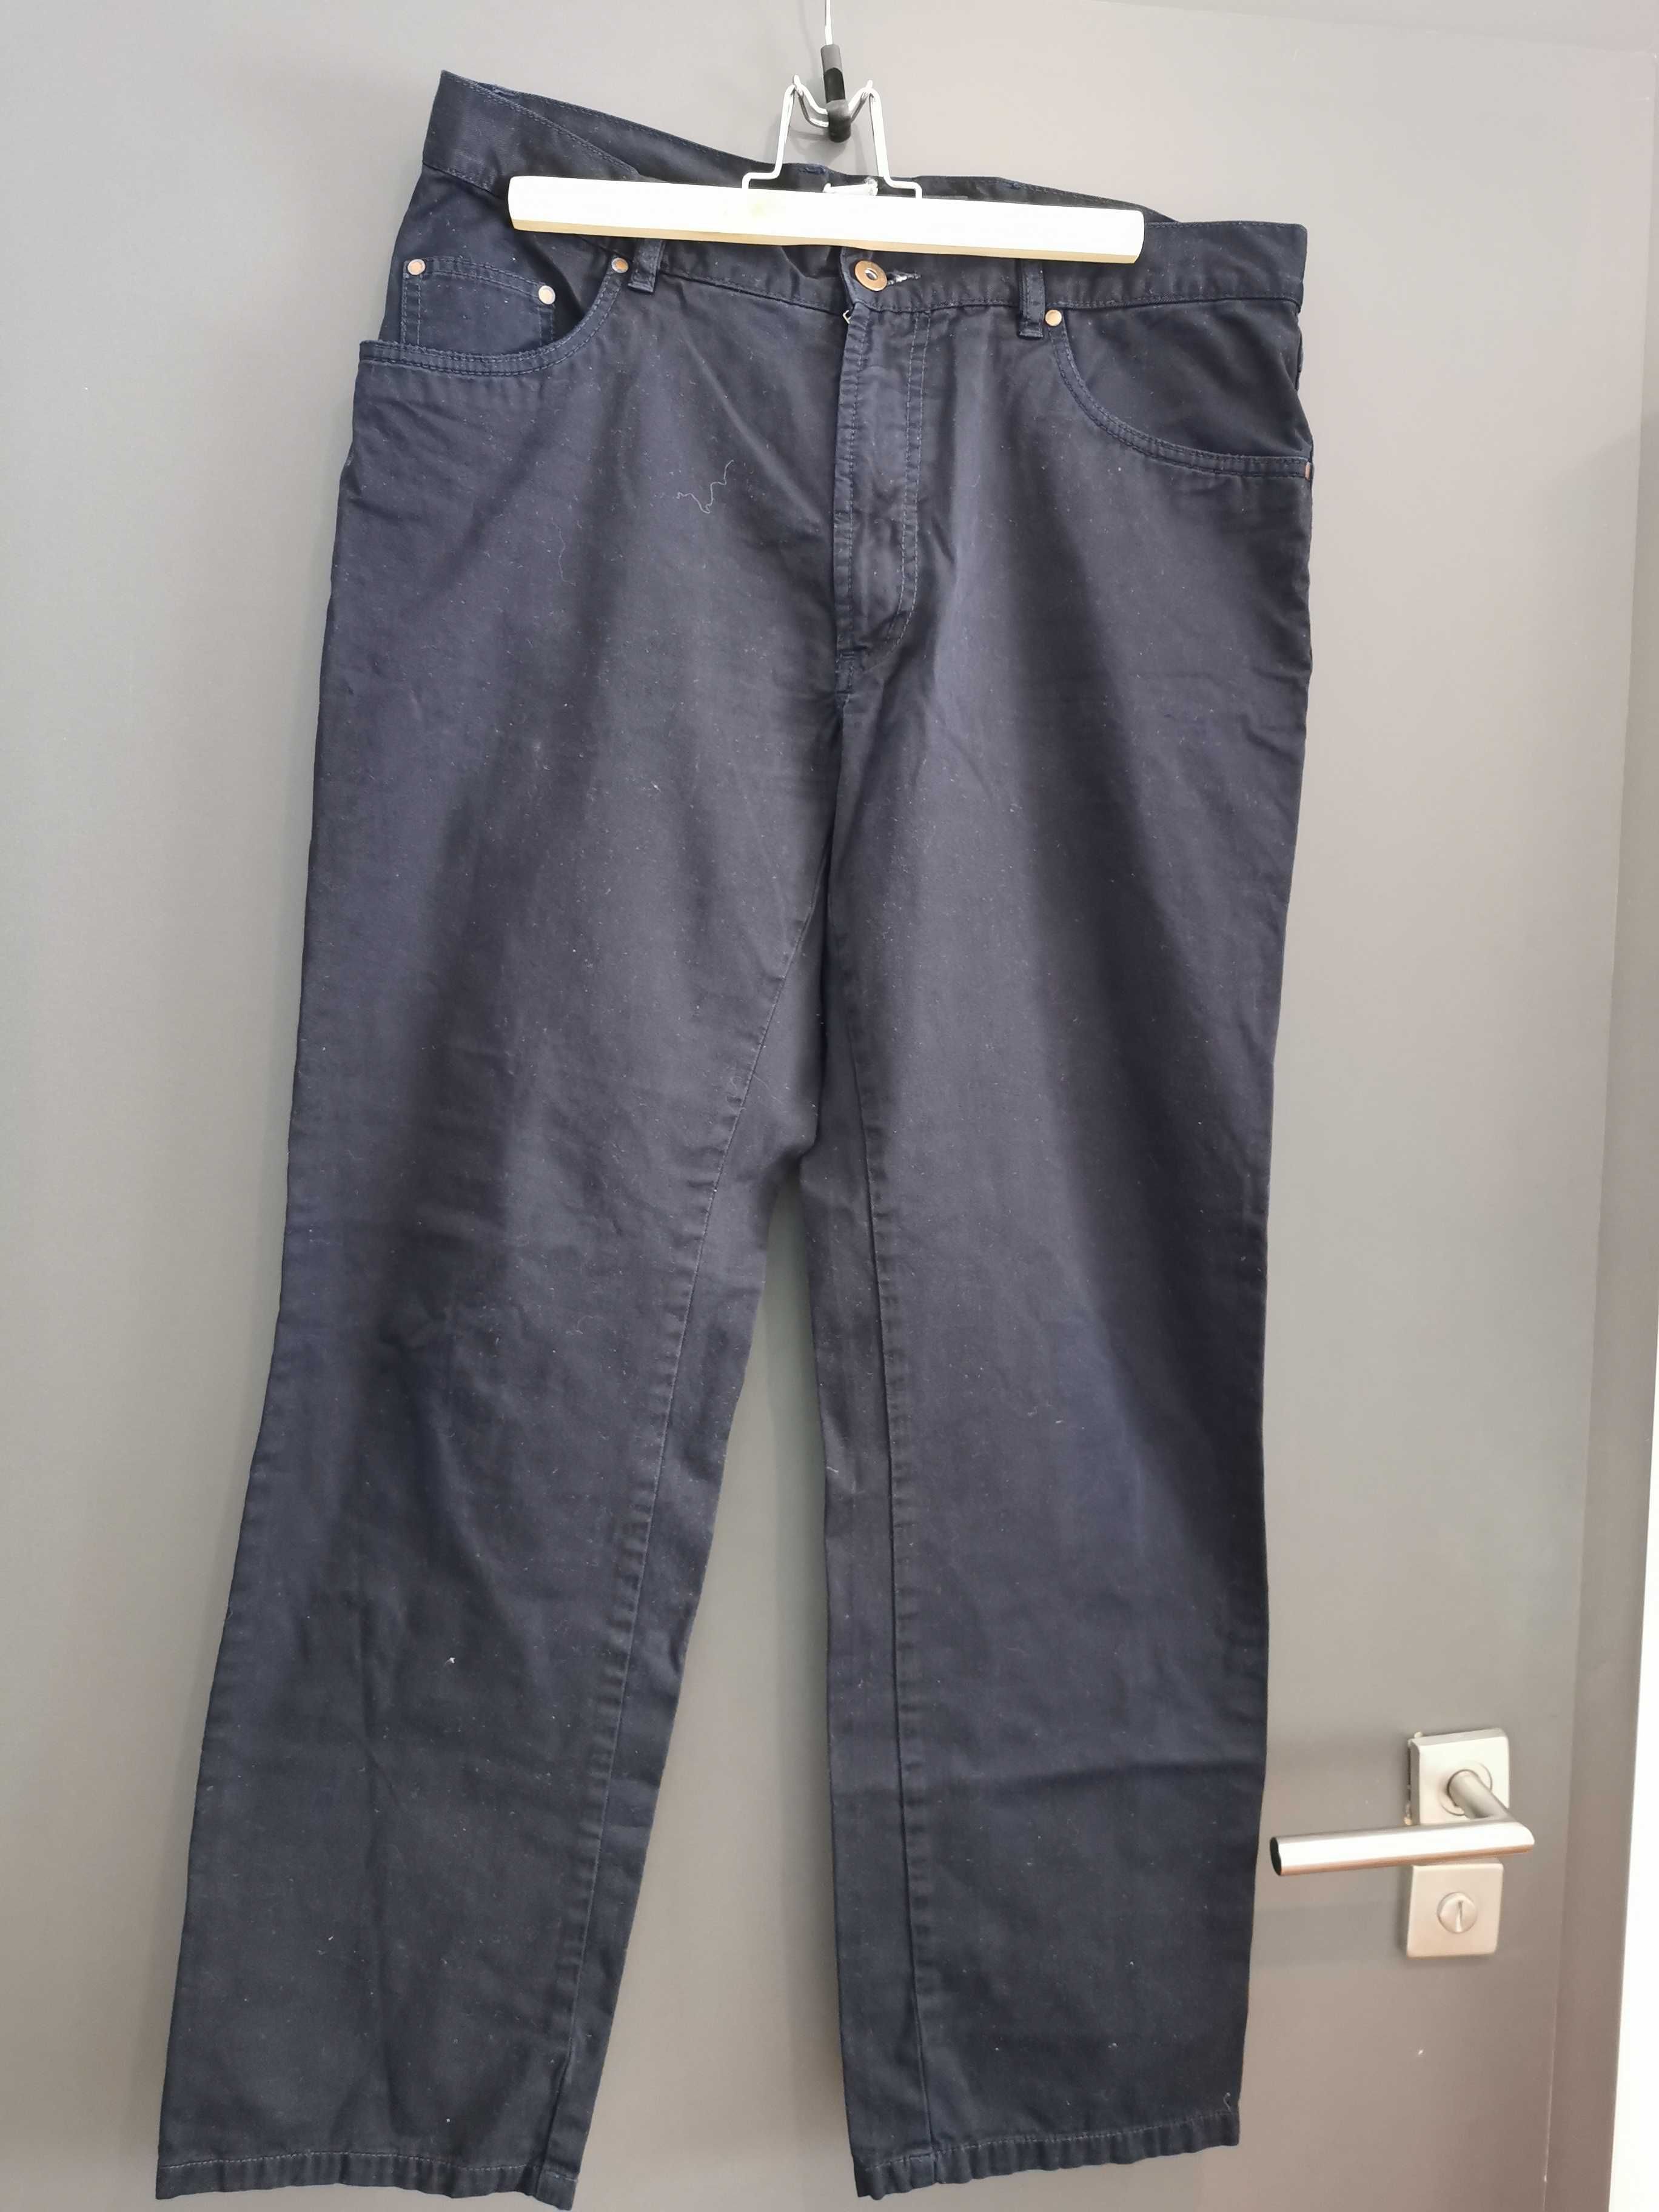 Spodnie materiałowe damskie nogawka szeroka r. 40-42